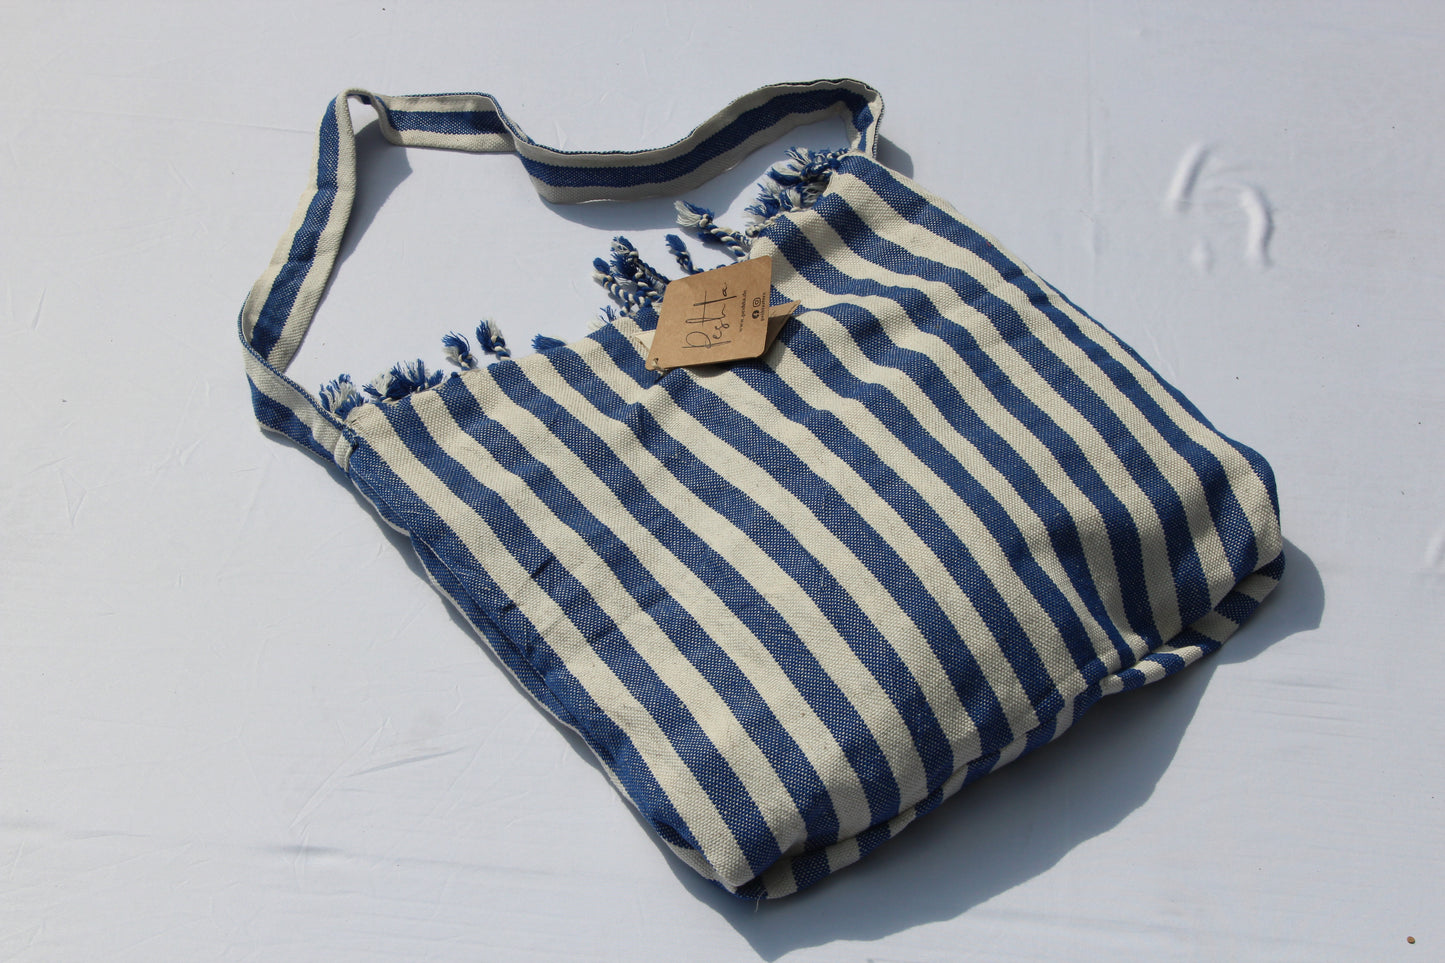 Rincon Hey Bag by Peshta. Eine Umhängetasche oder doch ein Strandtuch? Oder vielleicht auch eine Picknickdecke ... finde es selbst heraus! In 4 Farben.